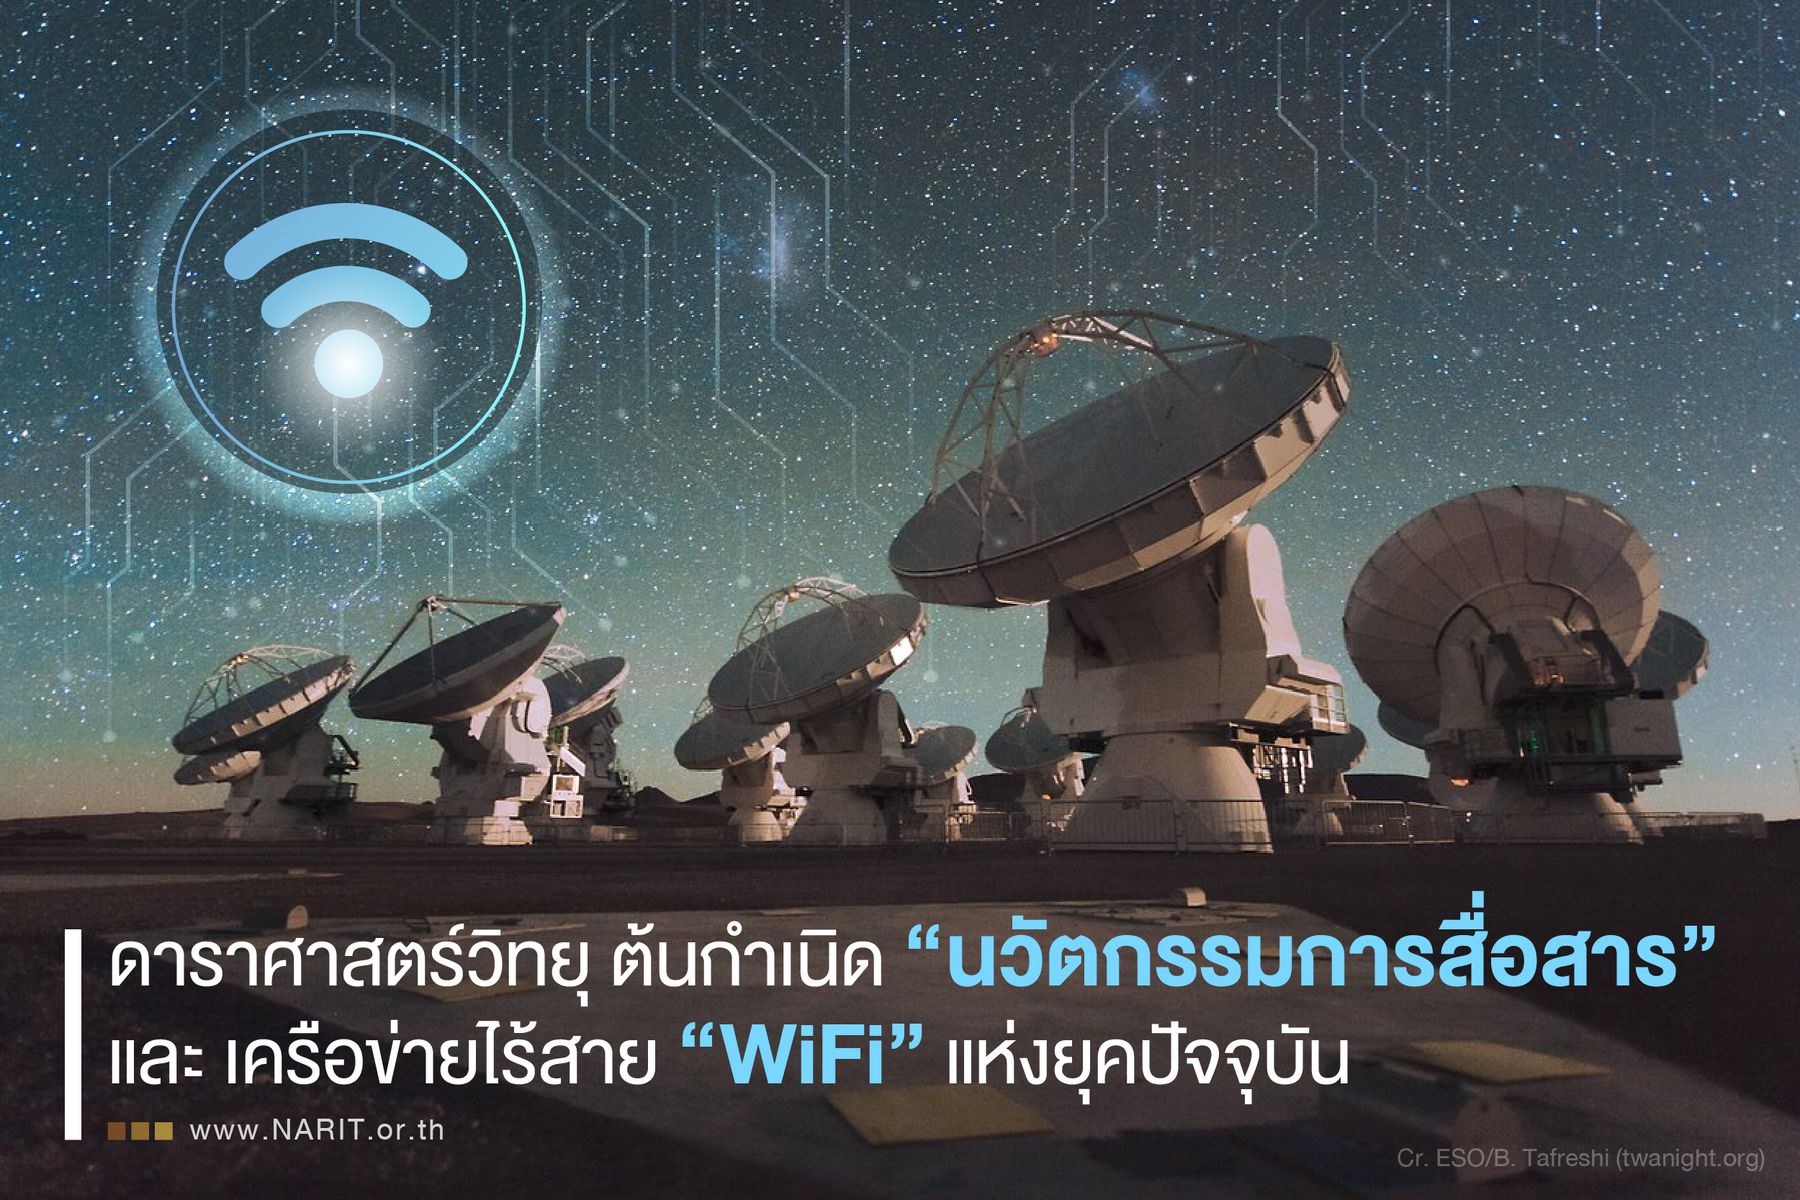 Ep. 19 ดาราศาสตร์วิทยุ ต้นกำเนิด “นวัตกรรมการสื่อสาร” และ เครือข่ายไร้สาย “WiFi” แห่งยุคปัจจุบัน